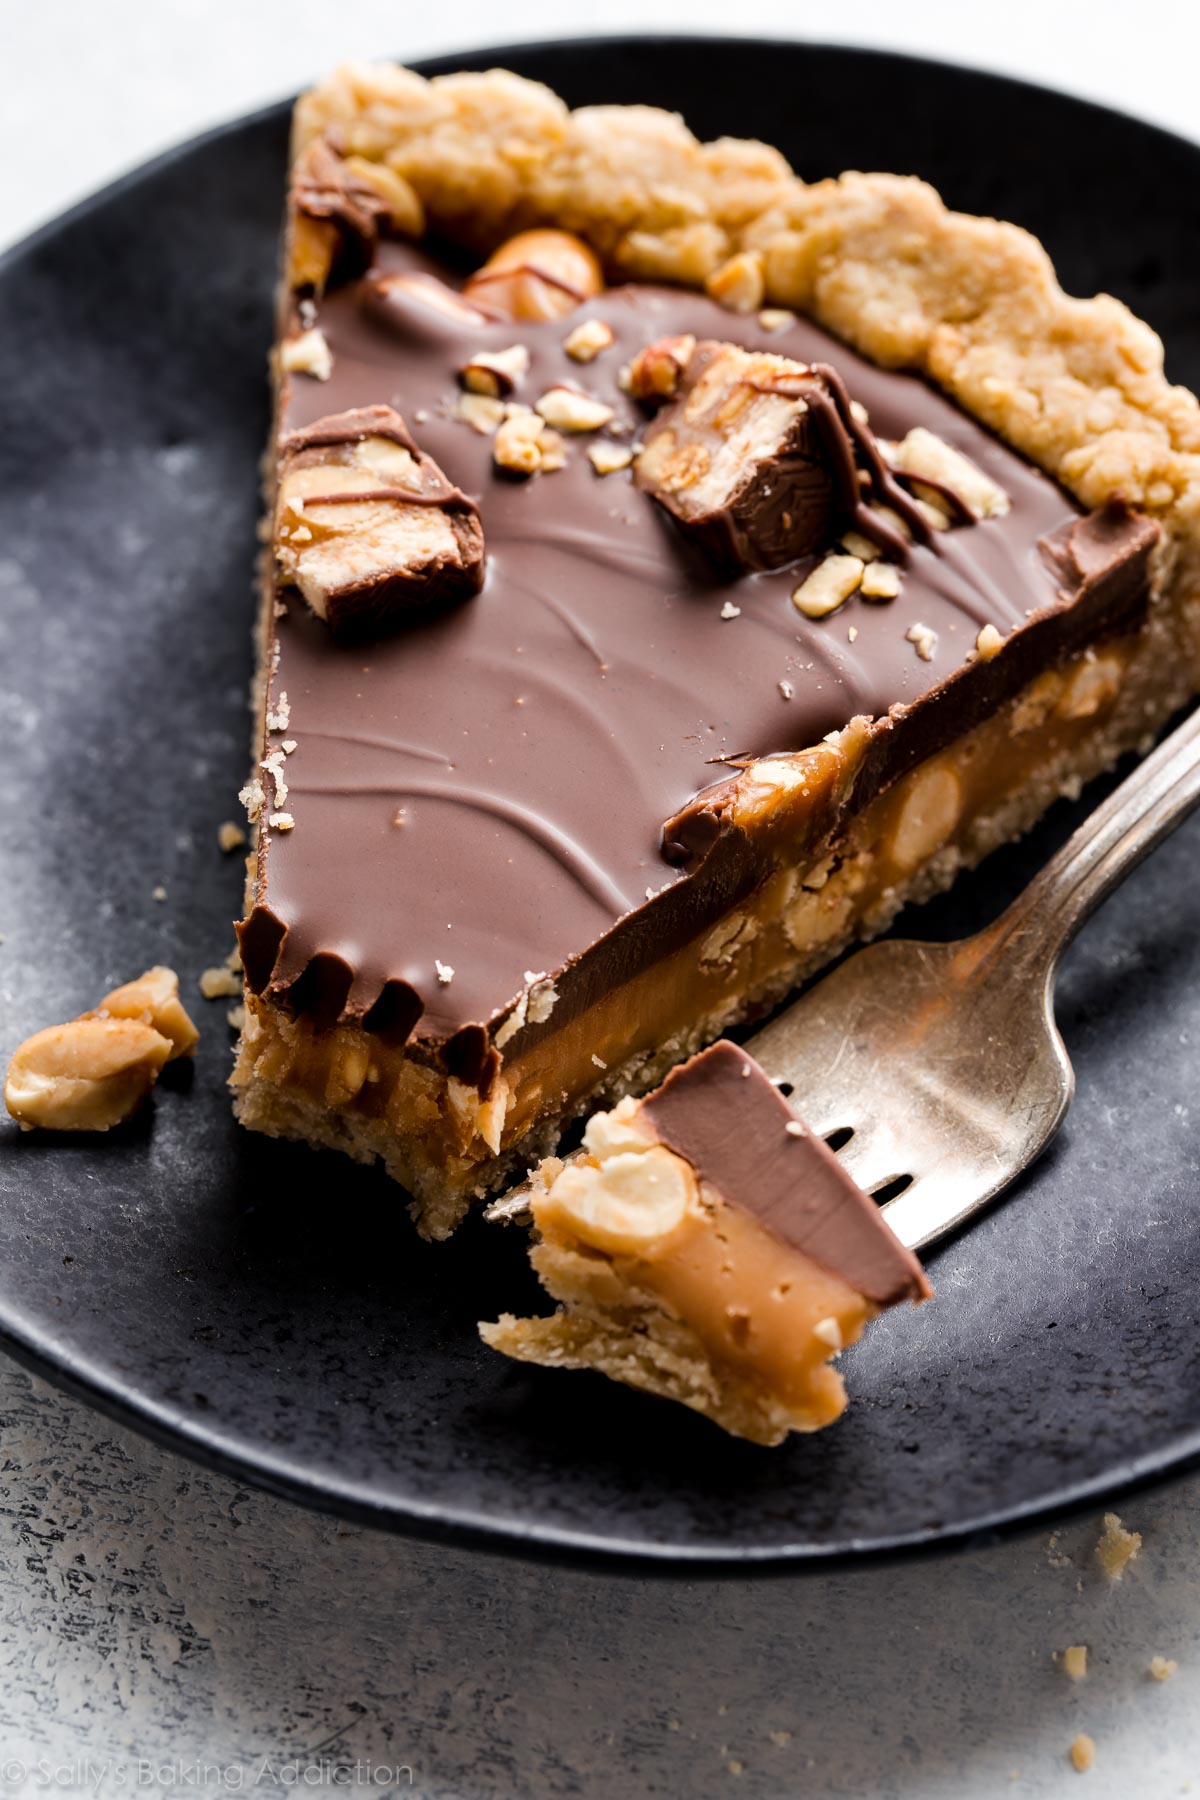 Tarte au caramel Snickers avec caramel salé, croûte d'arachide, arachides salées et garniture au beurre d'arachide au chocolat! Recette sur sallysbakingaddiction.com